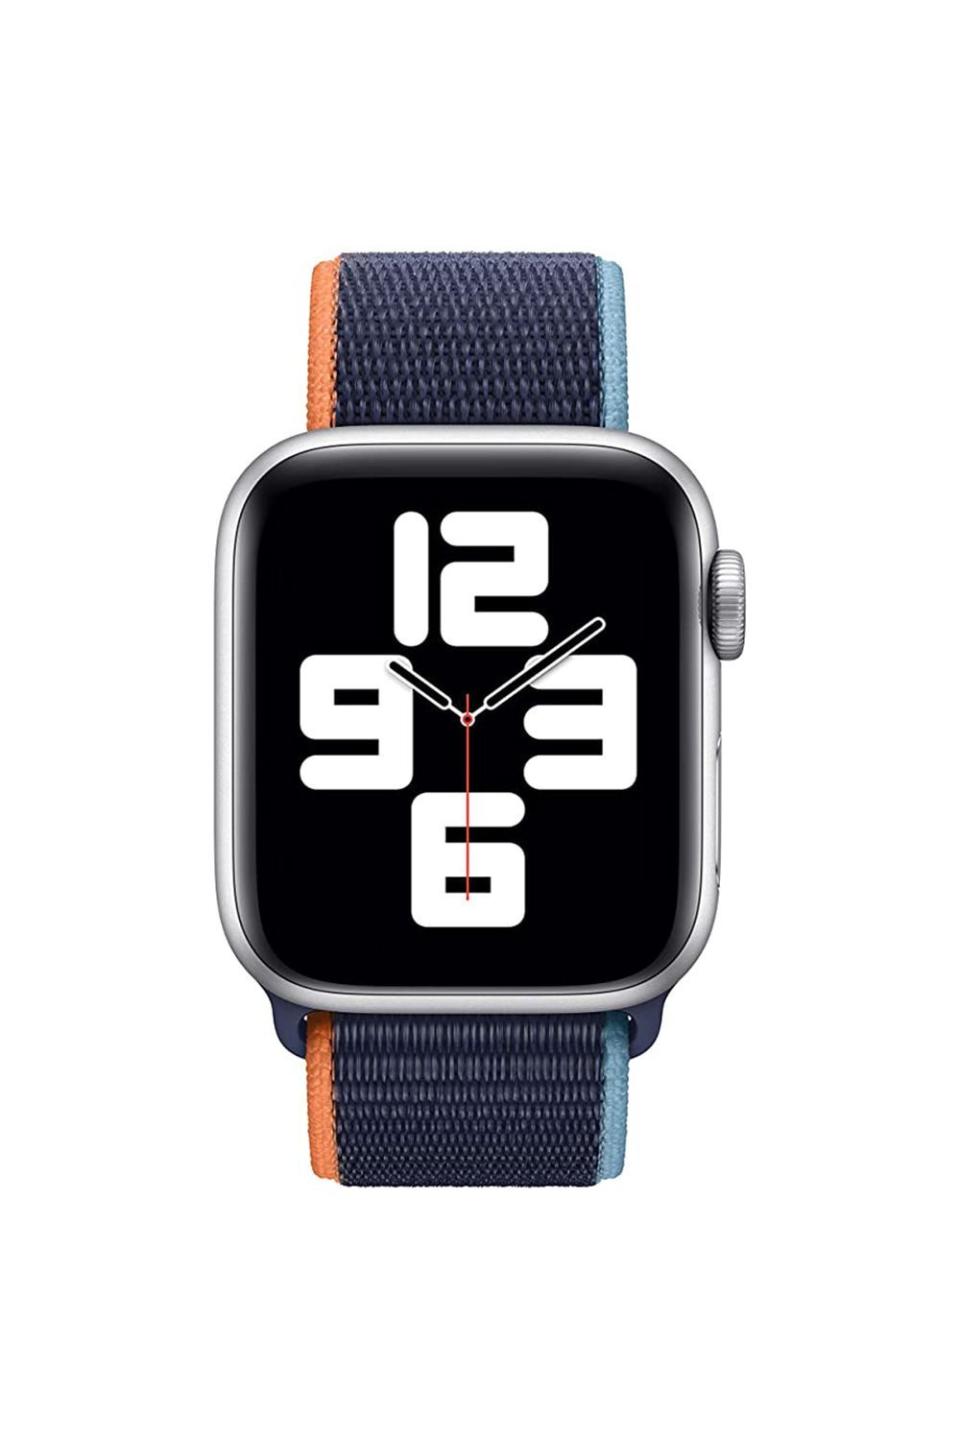 22) Apple Watch Sport Loop